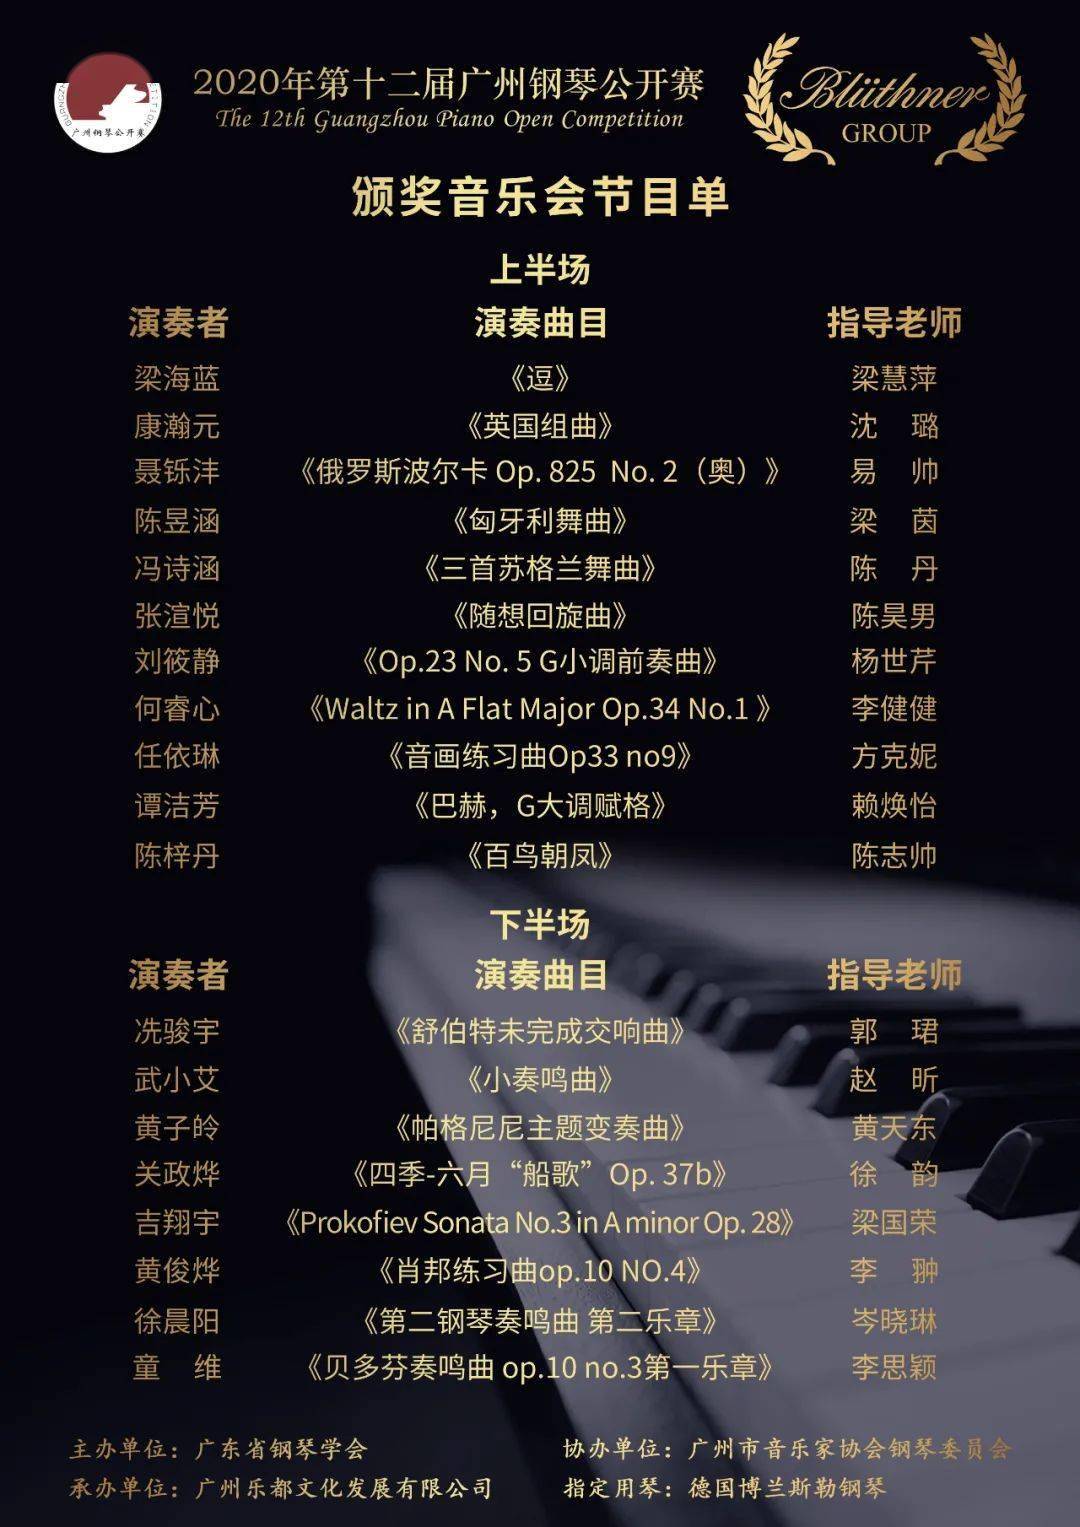 颁奖盛典2020年第十二届广州钢琴公开赛颁奖盛典即将拉开帷幕